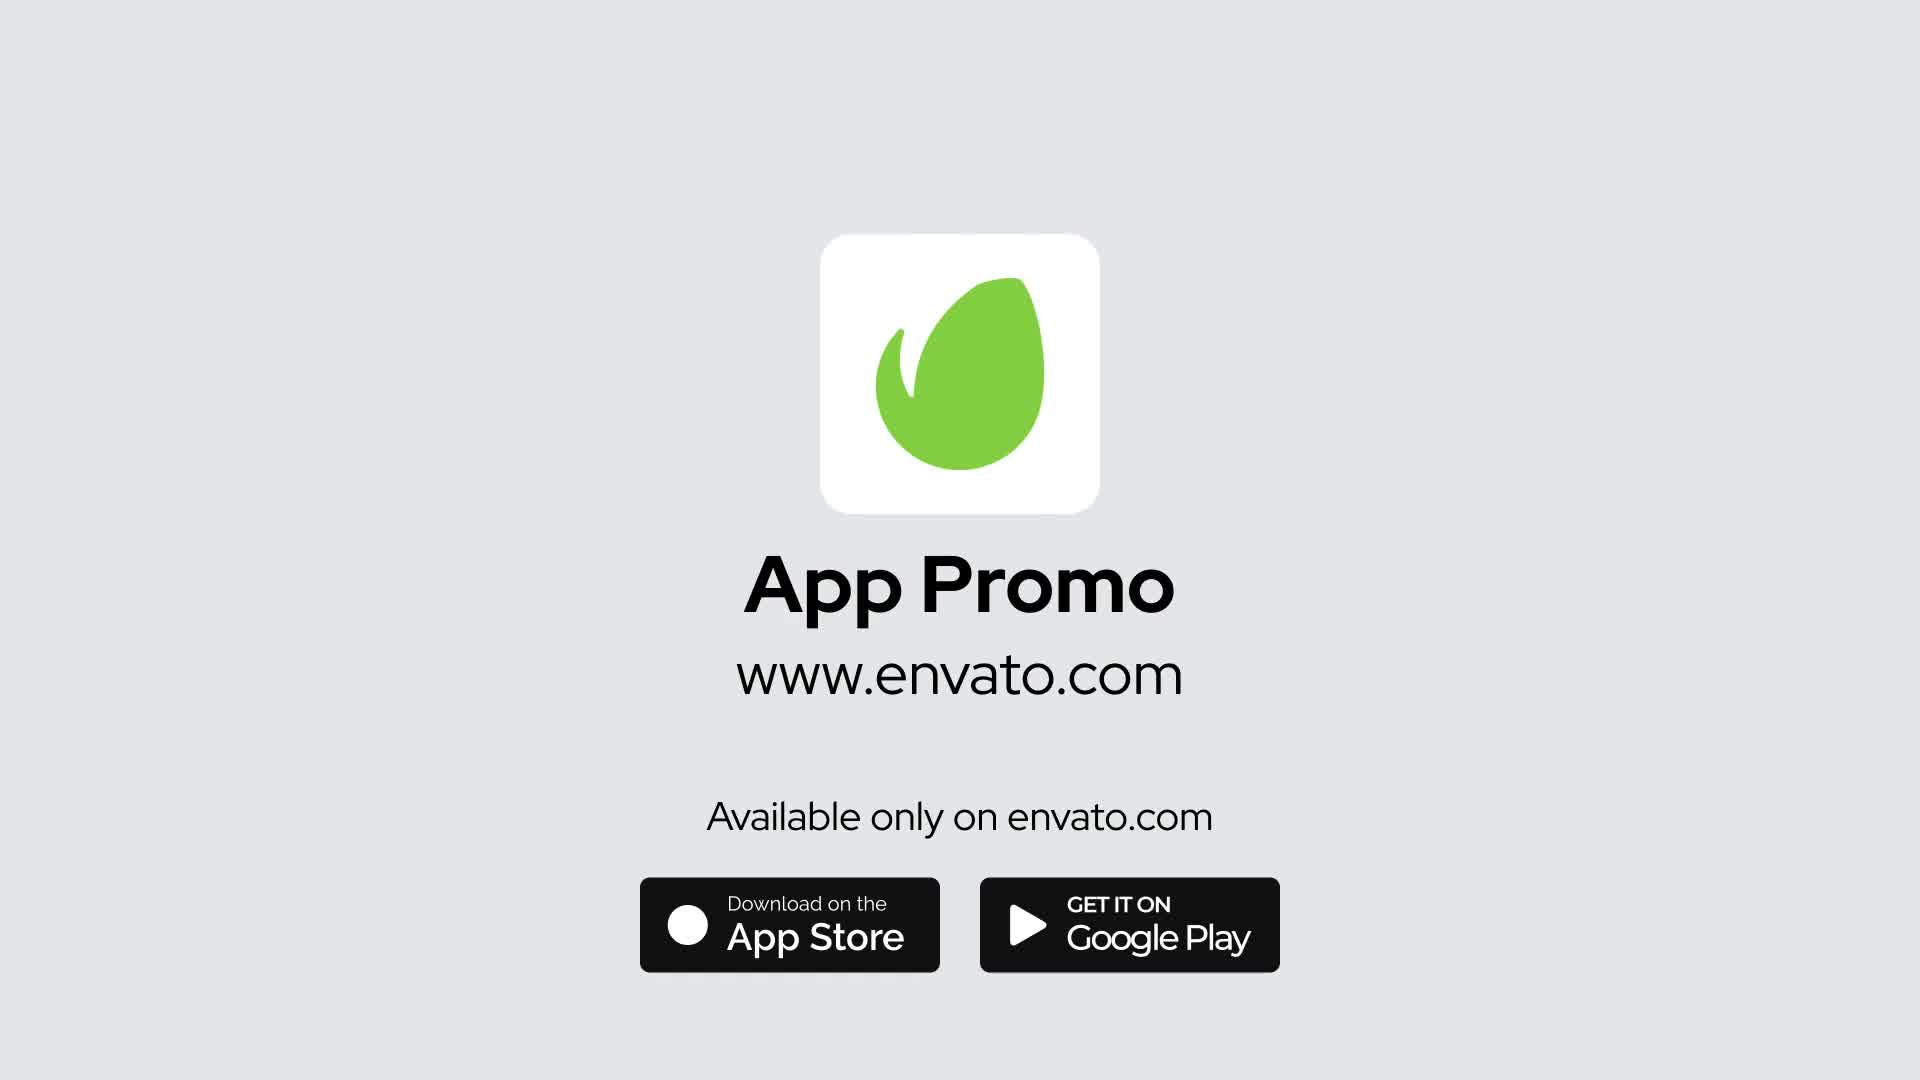 Mobile App Promo for Premiere Pro Videohive 35682088 Premiere Pro Image 10